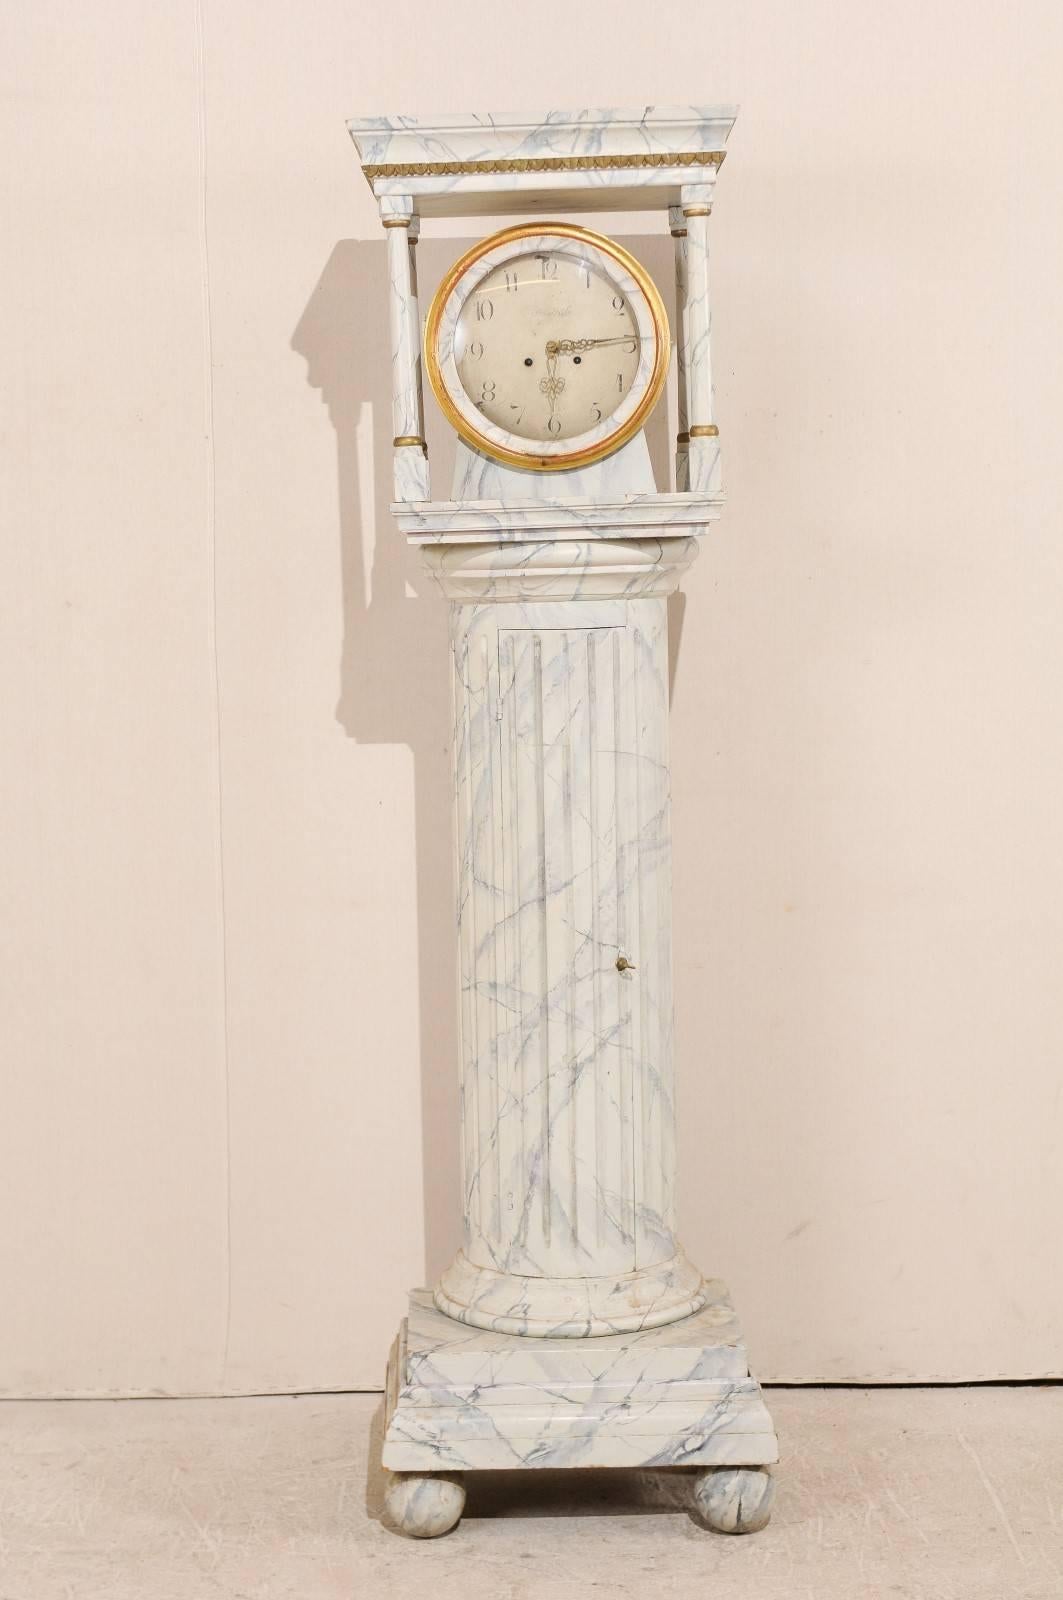 Une horloge suédoise du 19ème siècle à long boîtier. Cette horloge de sol suédoise, datant des années 1820, présente un corps de colonne semi-circulaire avec des cannelures verticales et de fausses marbrures sur toute sa surface. Cette horloge a